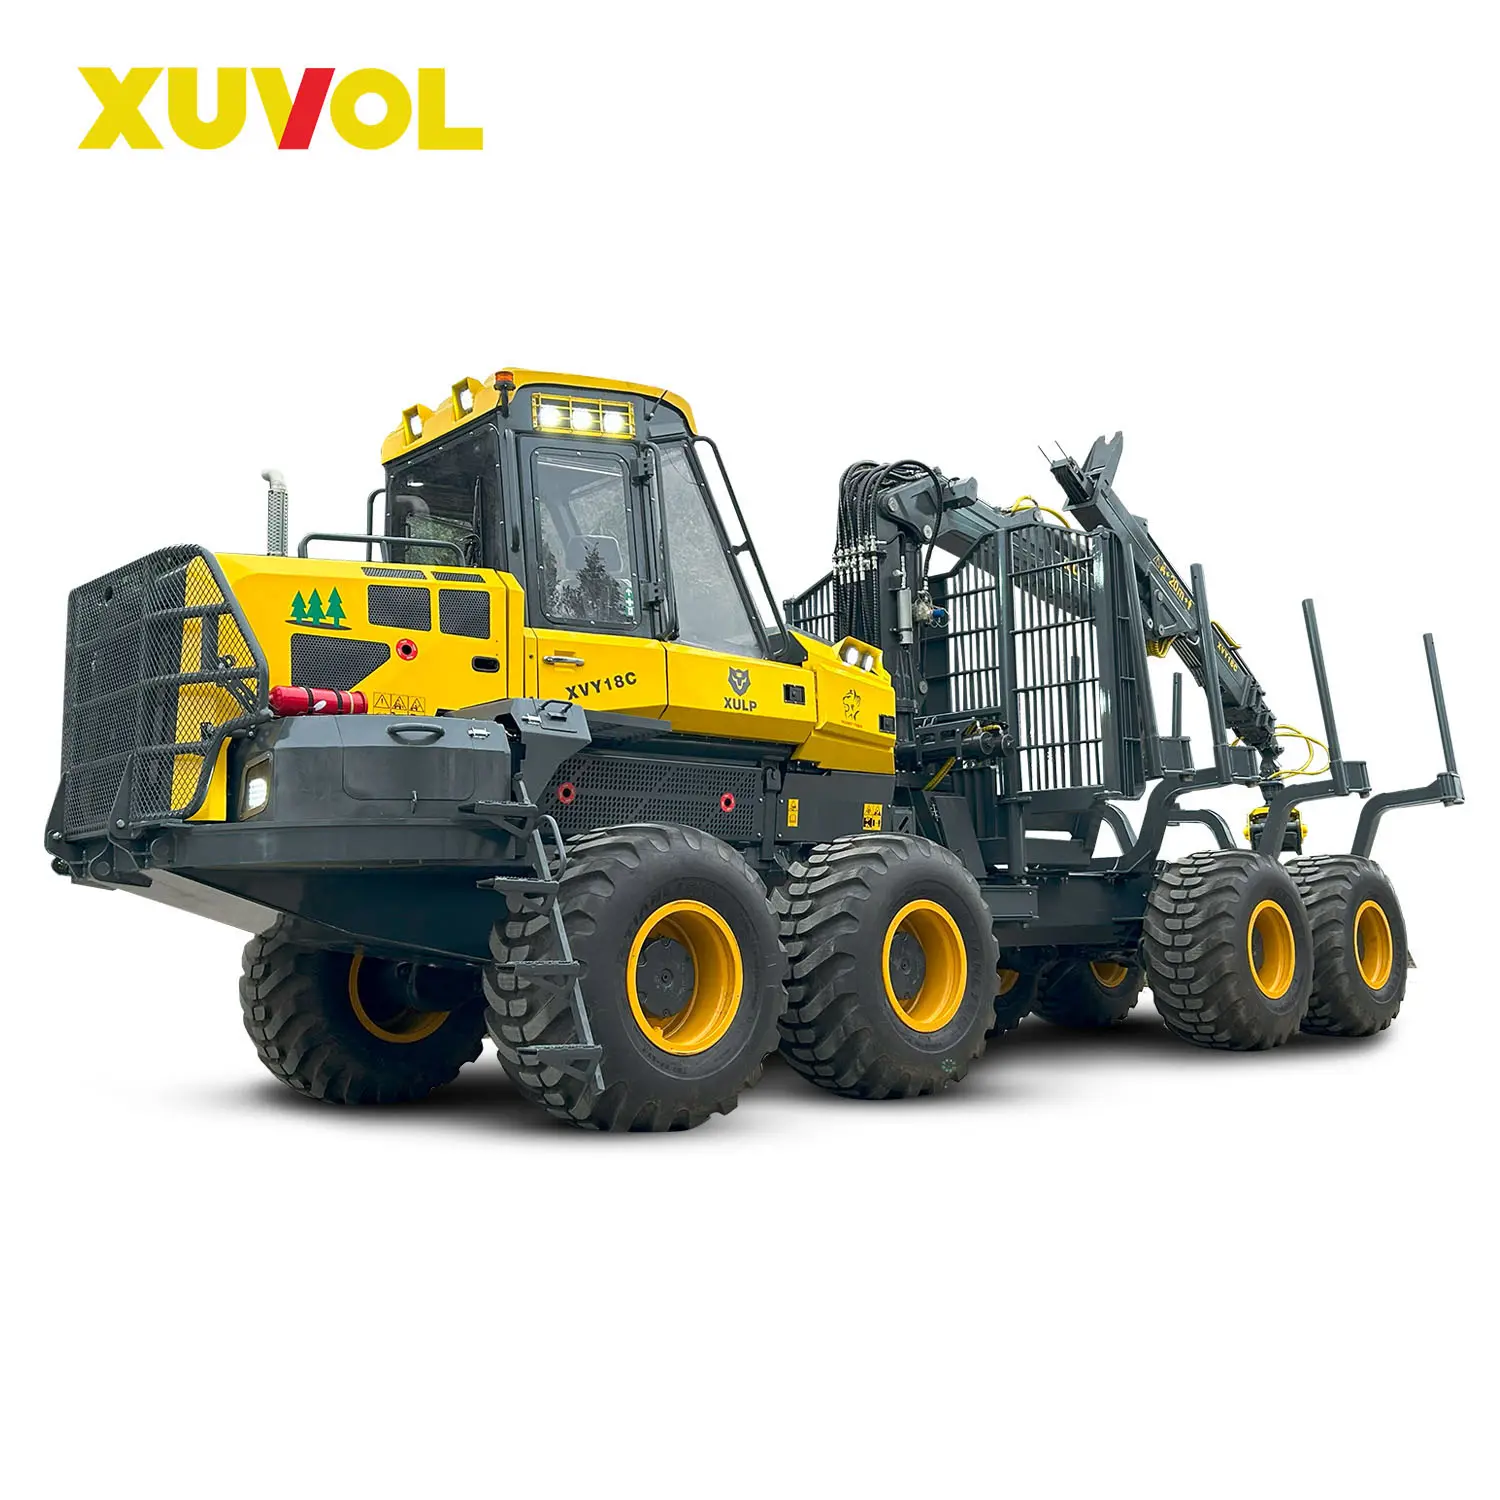 XUVOLXVY18C複合コレクター木材輸送負荷18T林業収穫機フォワーダートレーラー